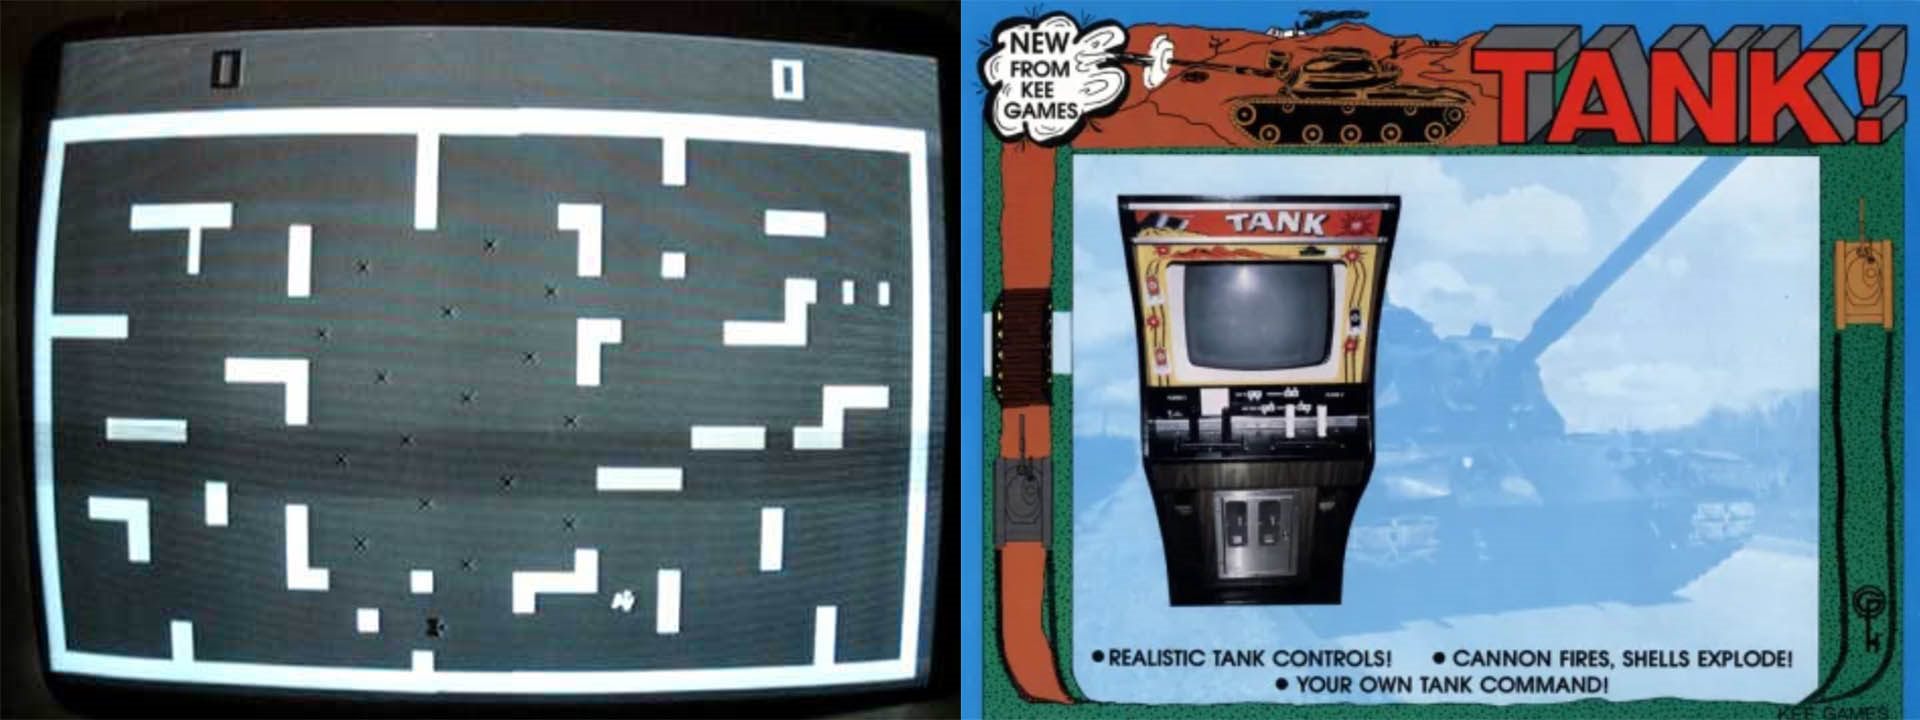 tank arcade game  Image of tank arcade game